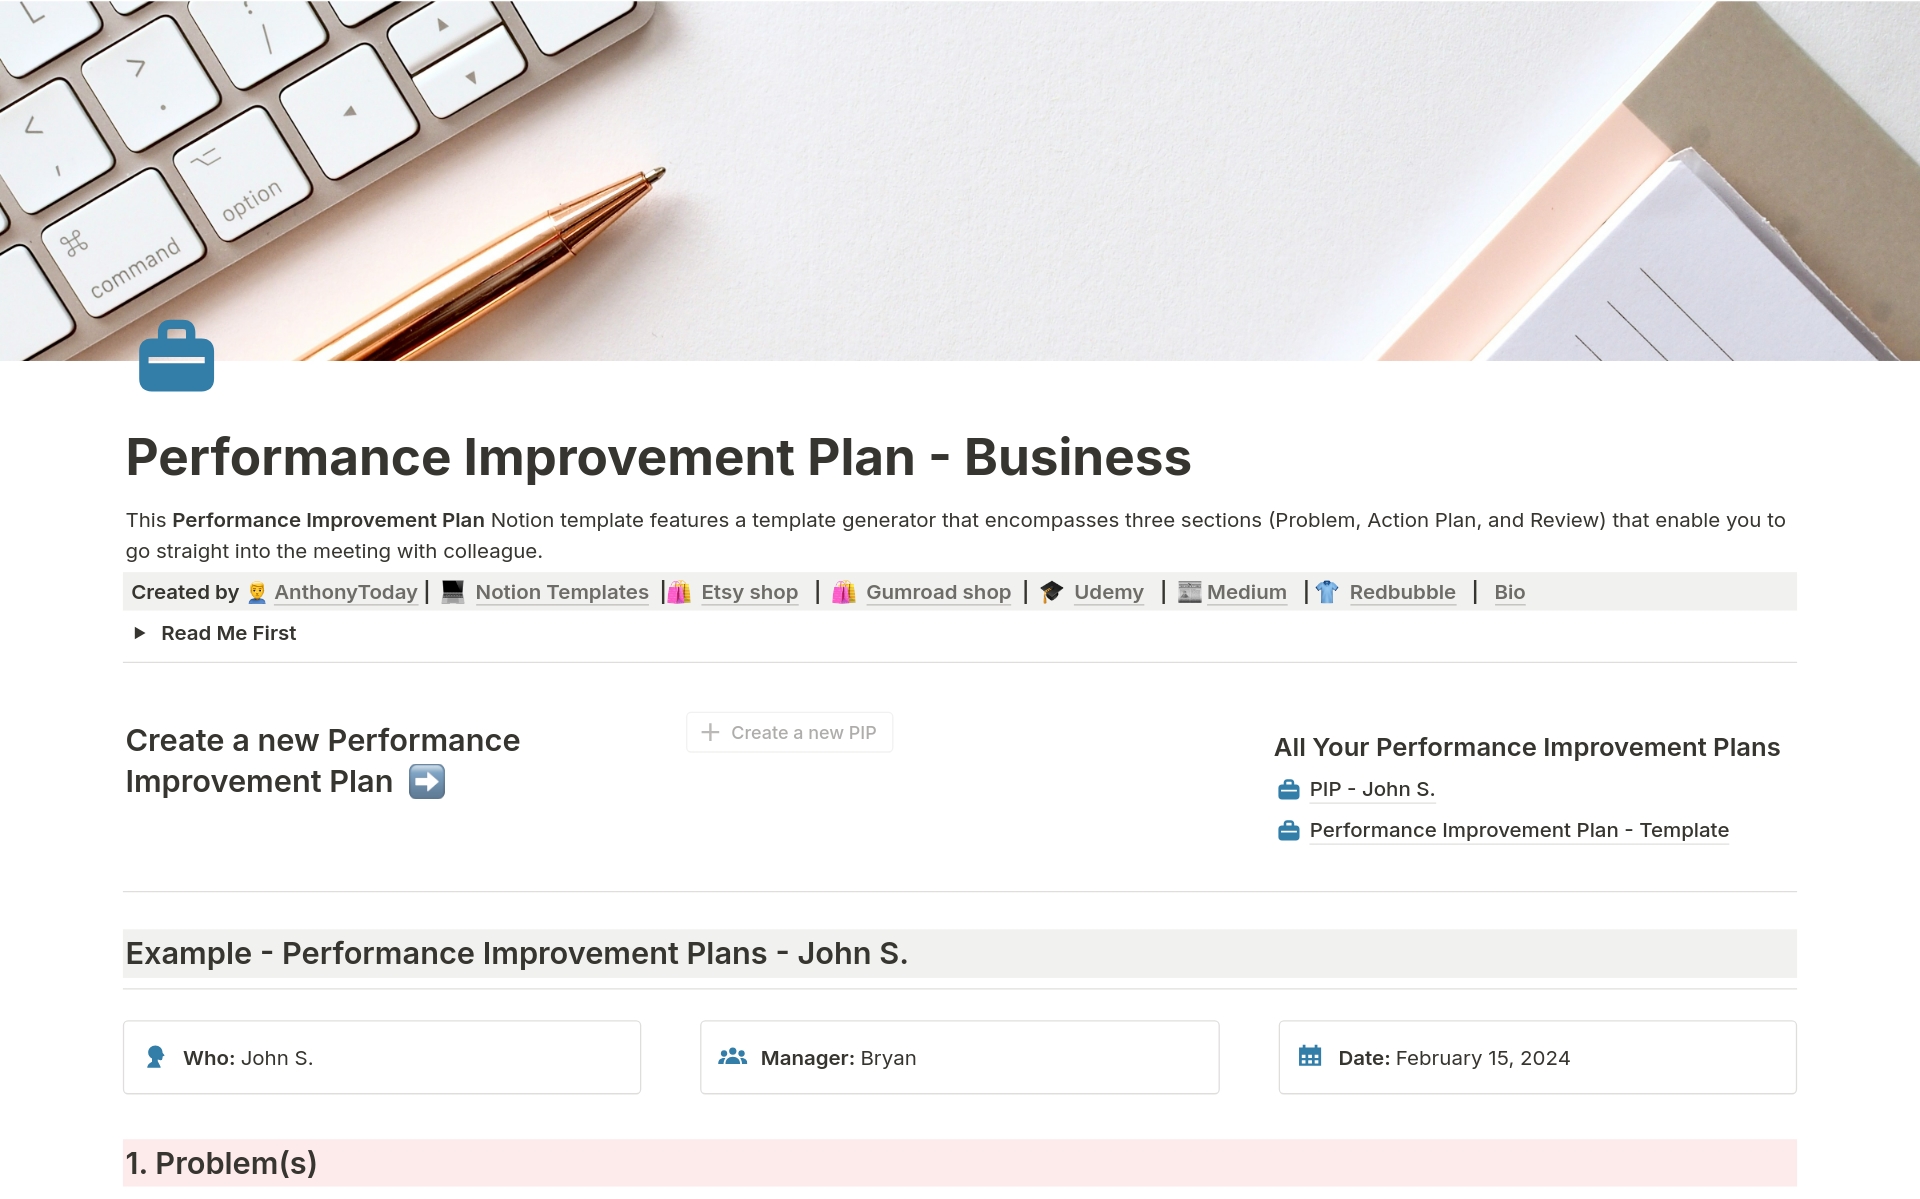 Aperçu du modèle de Performance Improvement Plan - Business